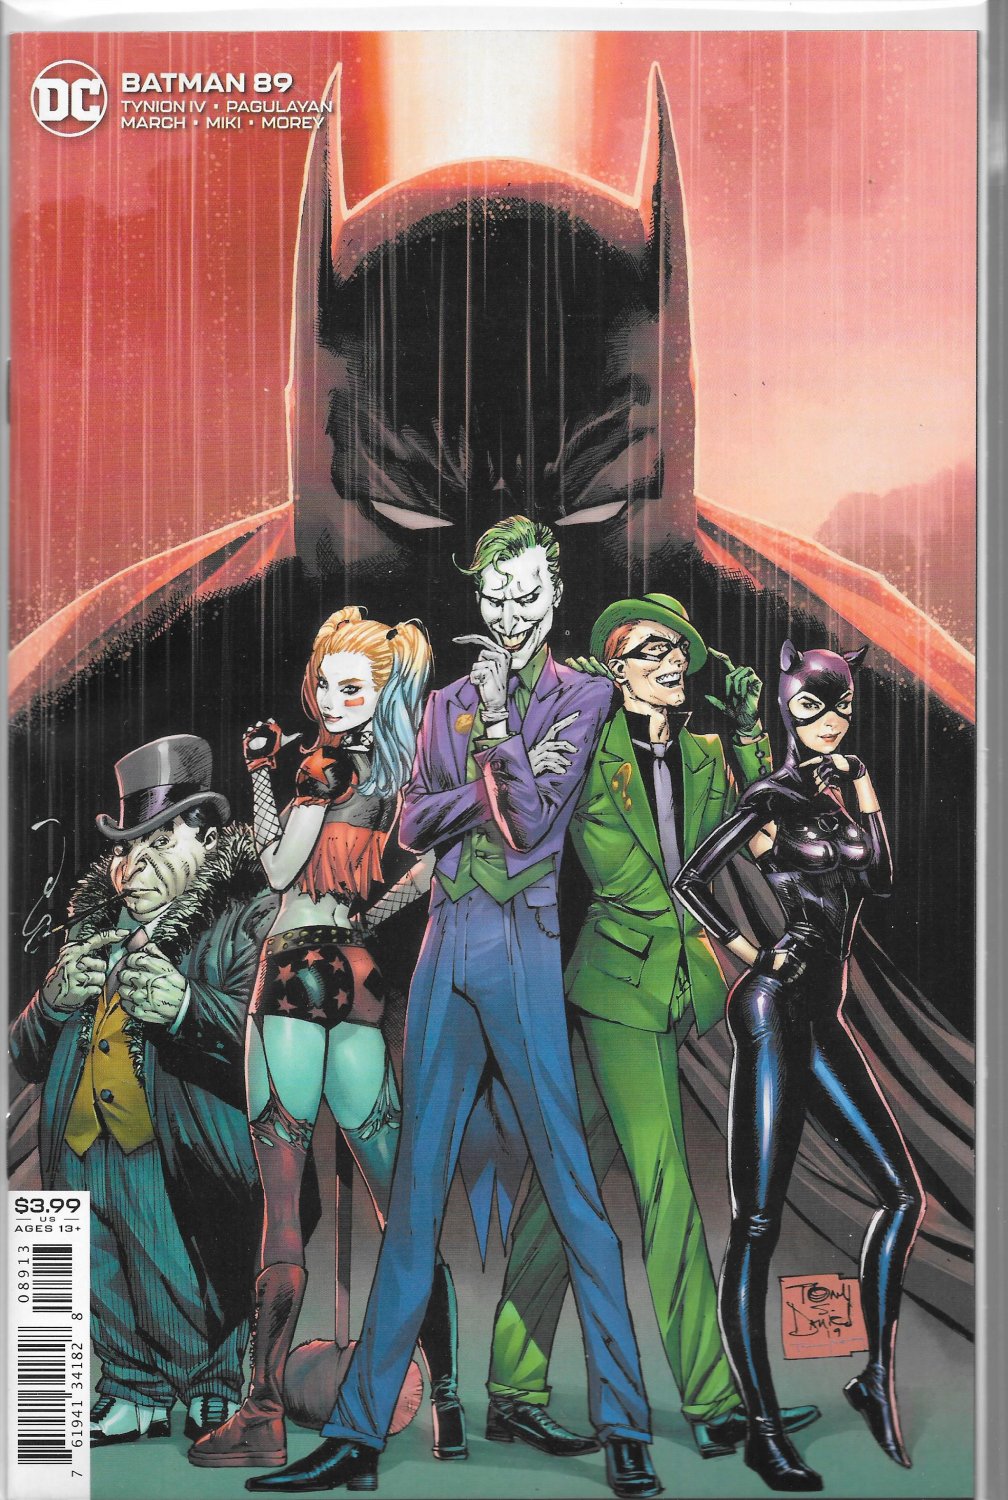 DC COMICS BATMAN #89 VOL. 3 3RD PRINT